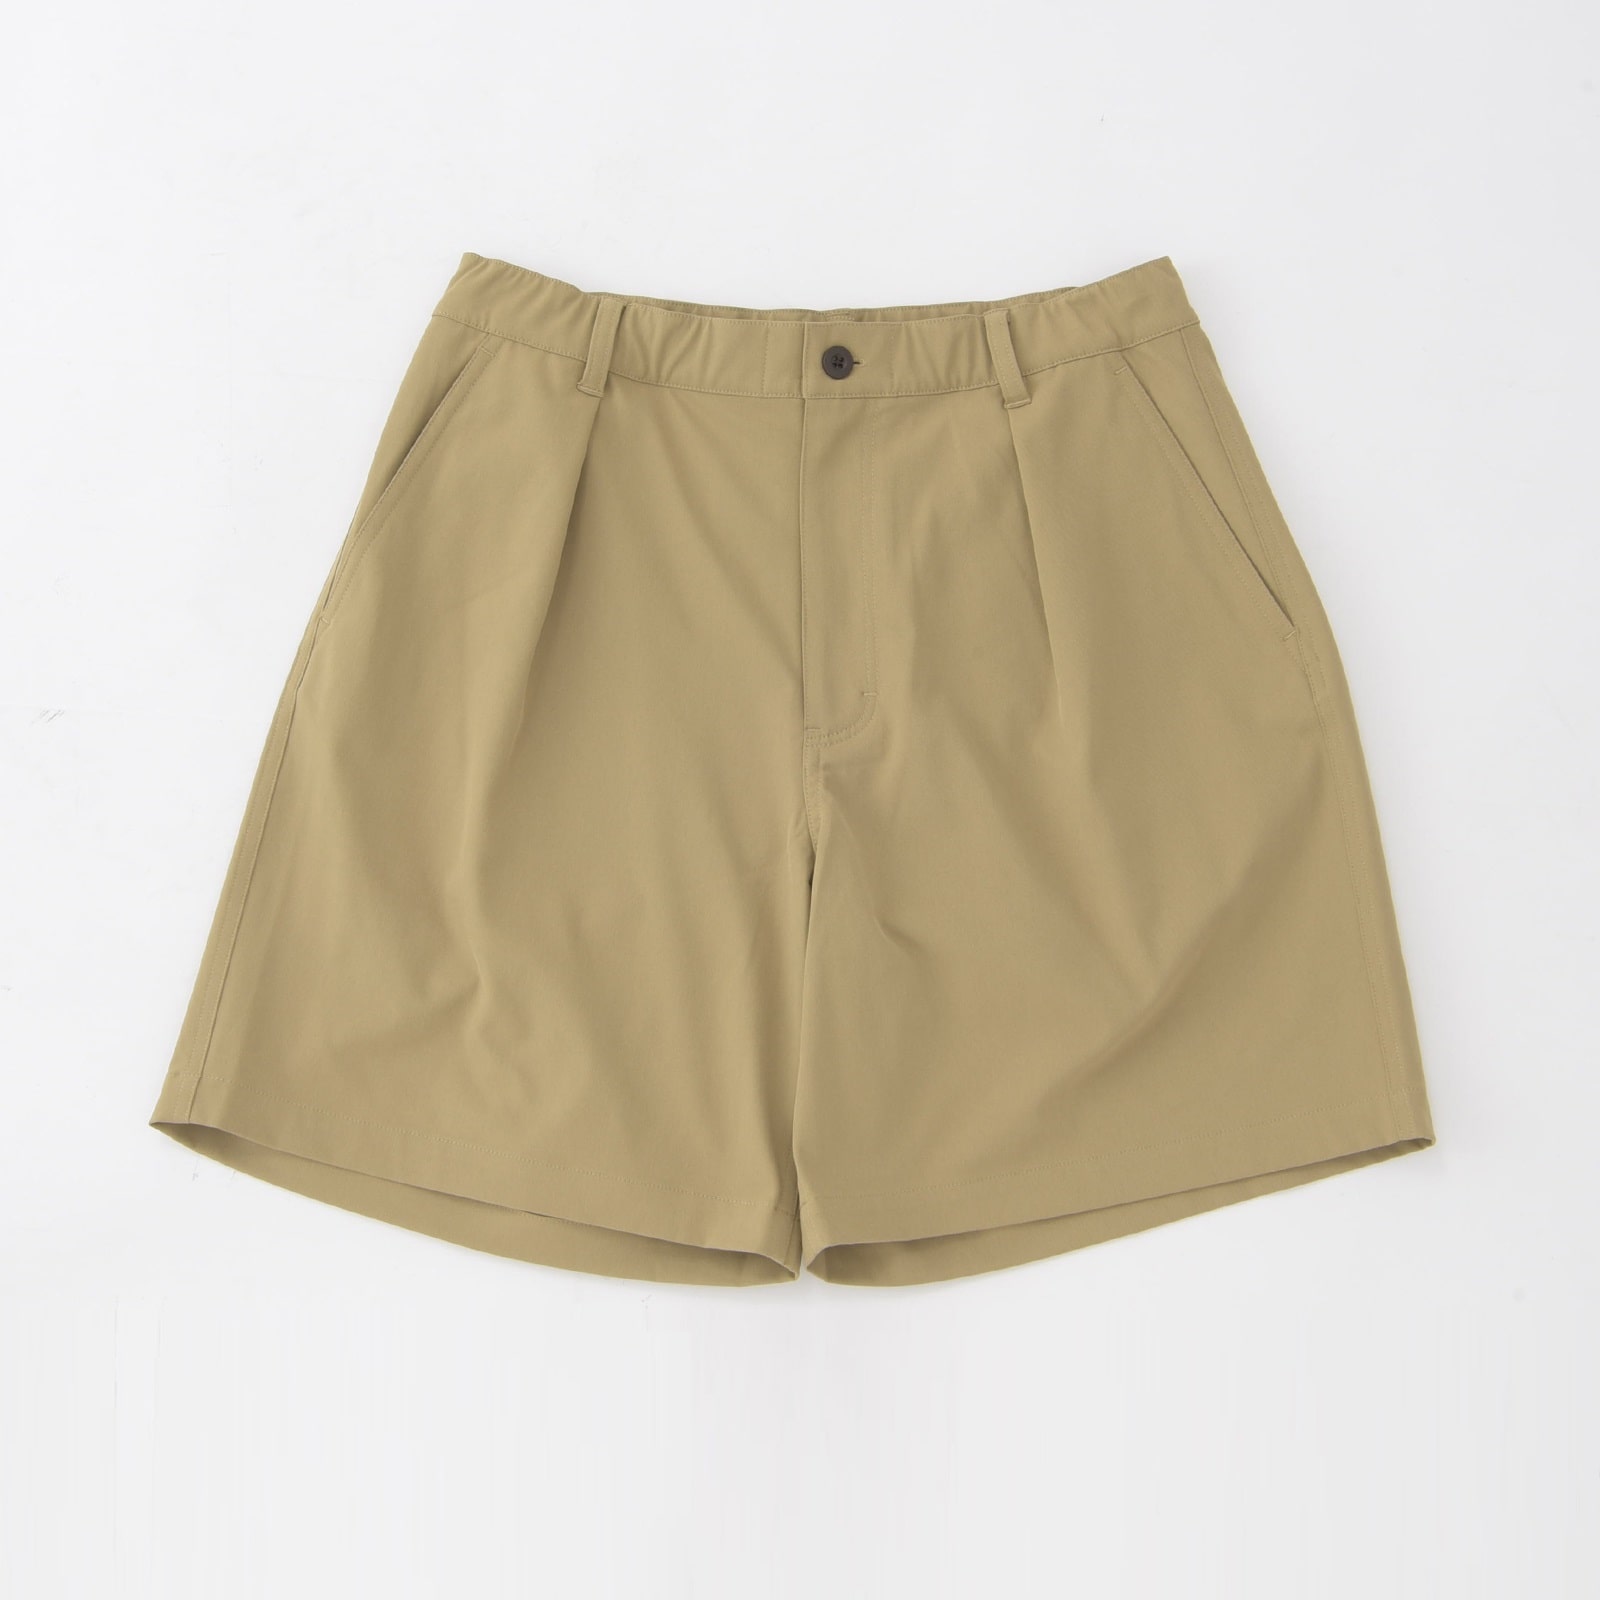 MET24 Chino Shorts